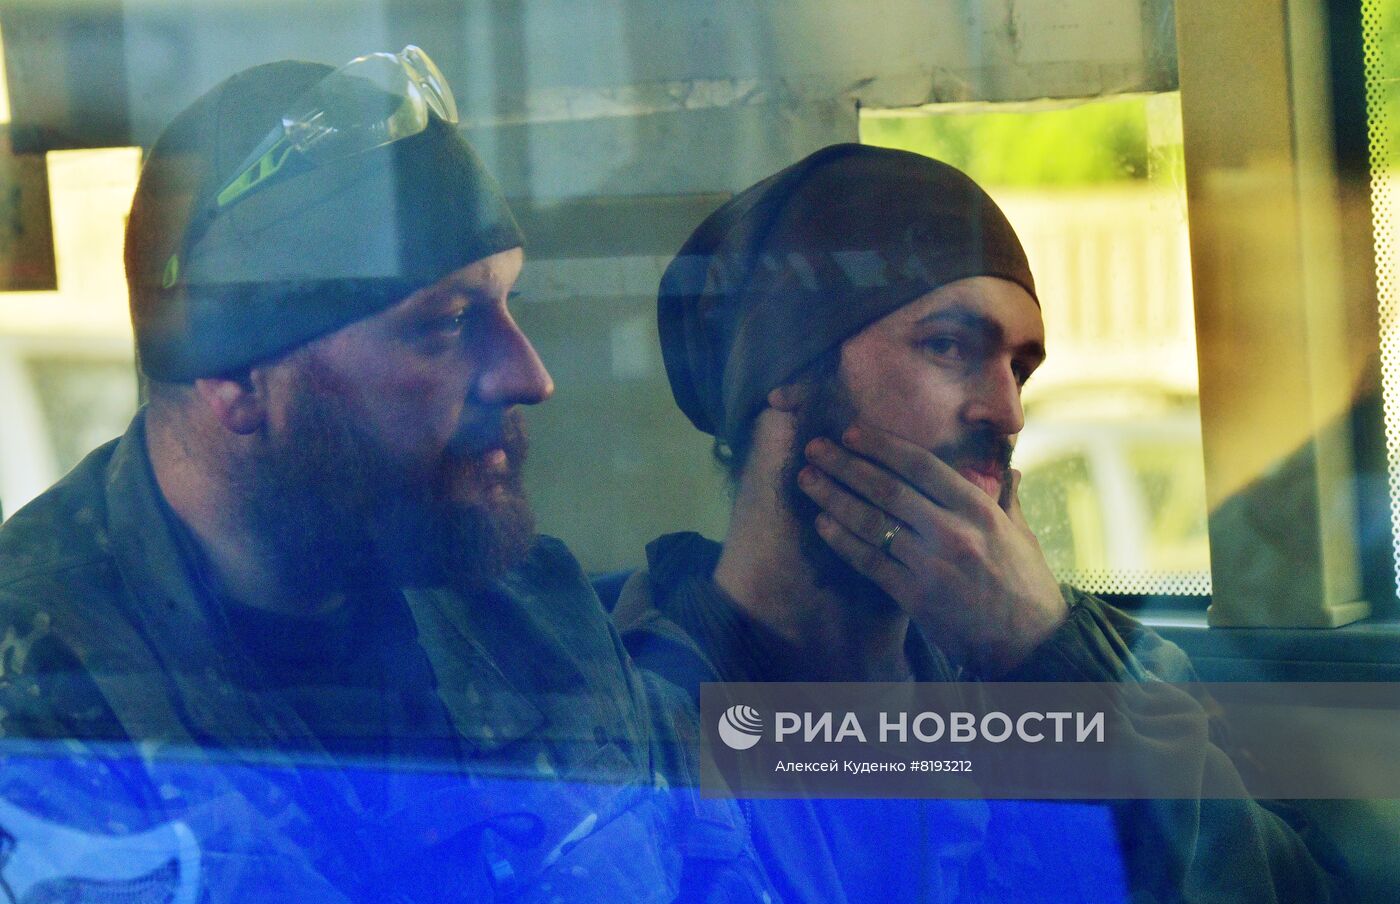 Сдавшихся в плен украинских военных и боевиков доставили в СИЗО в Еленовку